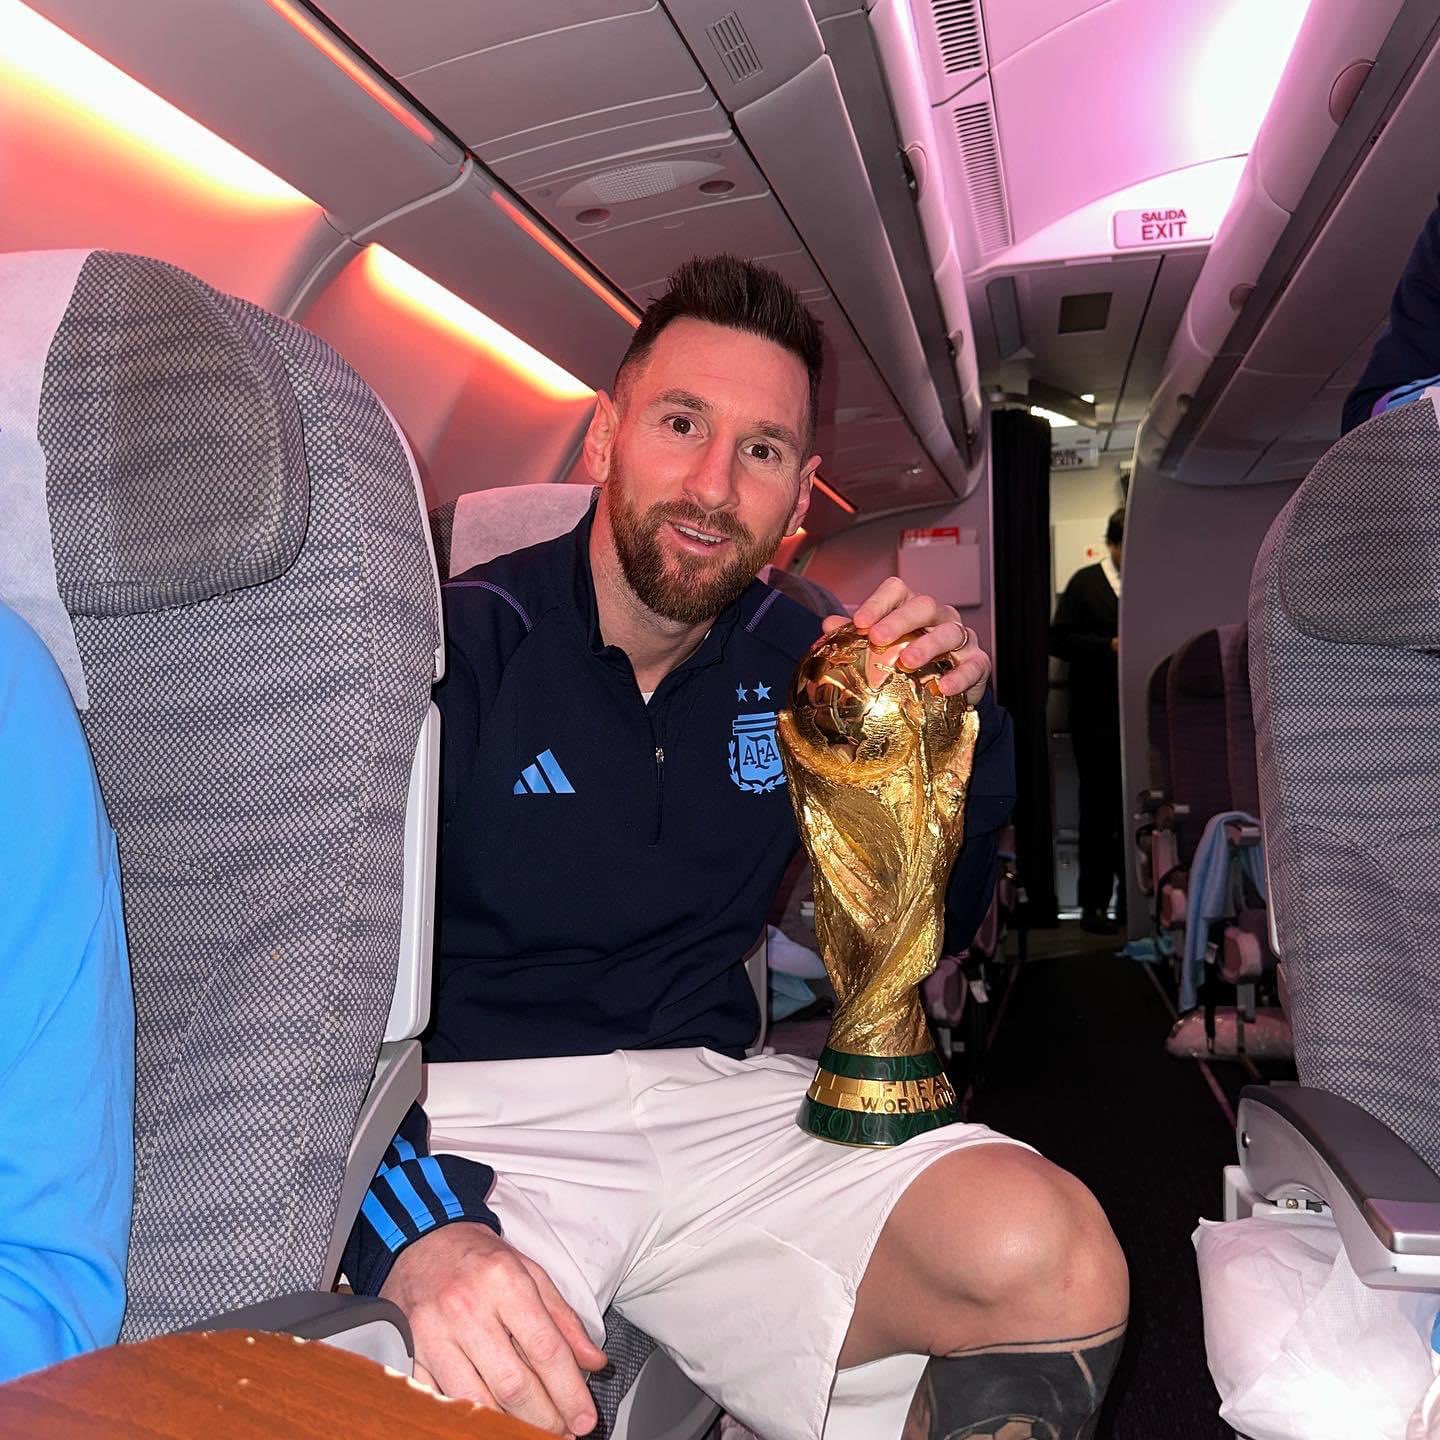 ¡Listos para celebrar! Argentina pone rumbo a su país con la Copa del Mundo